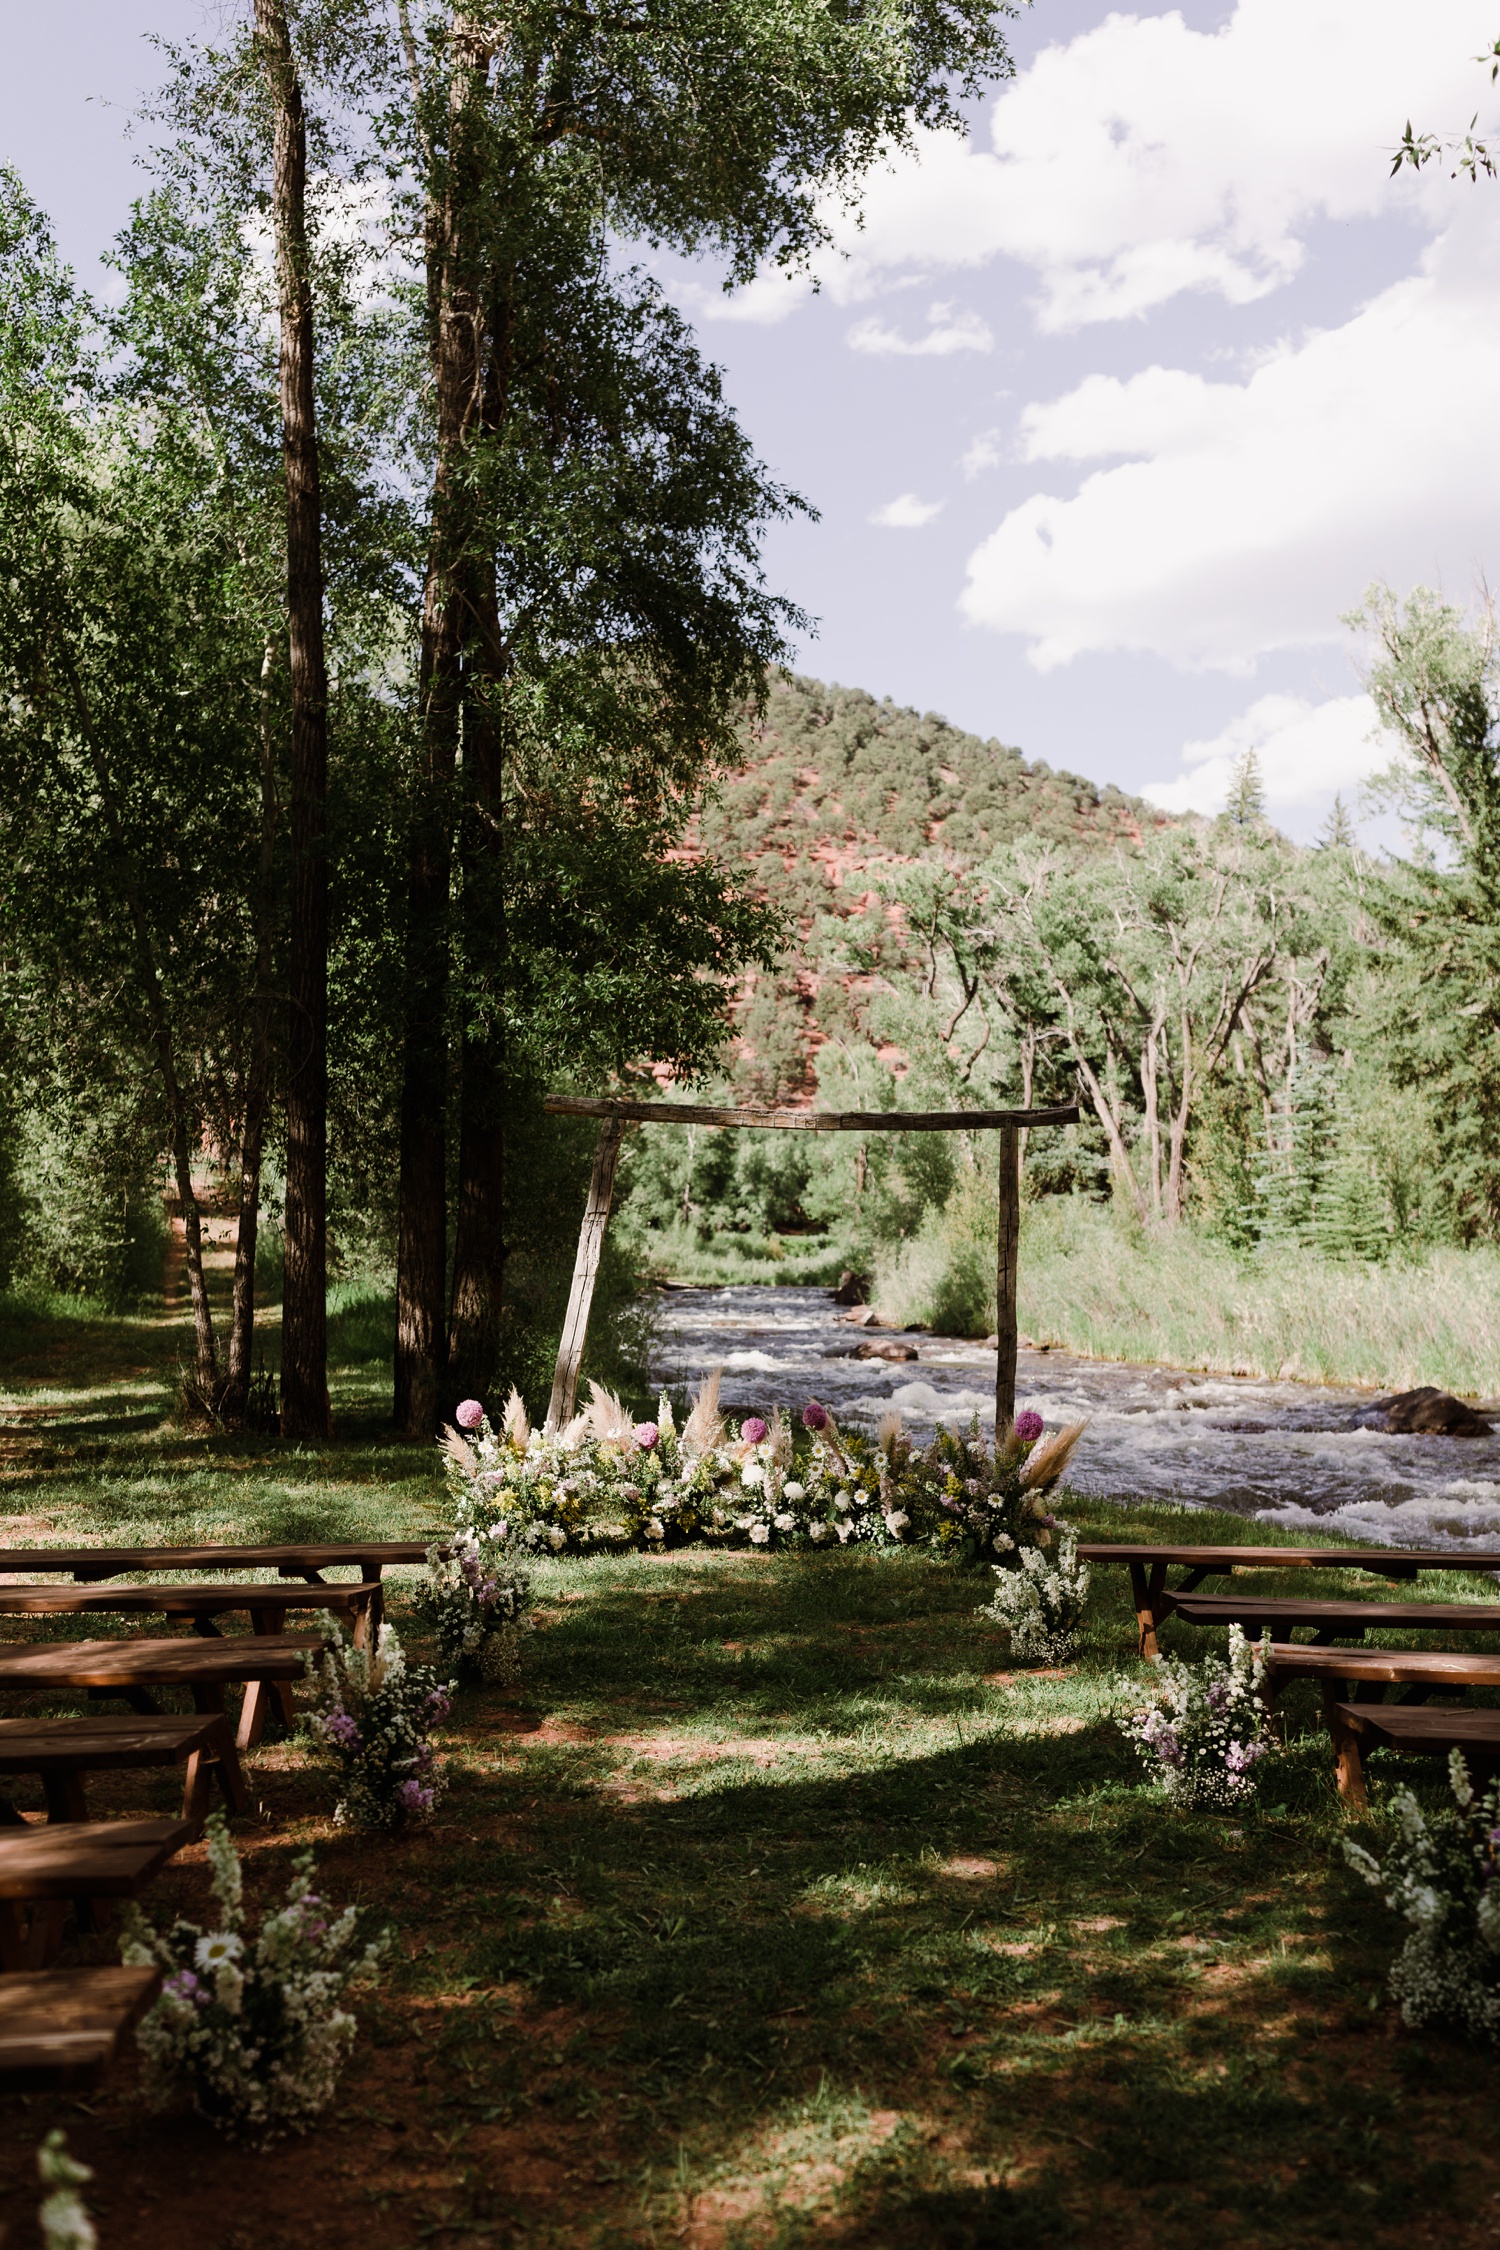 Colorado outdoor wedding venue